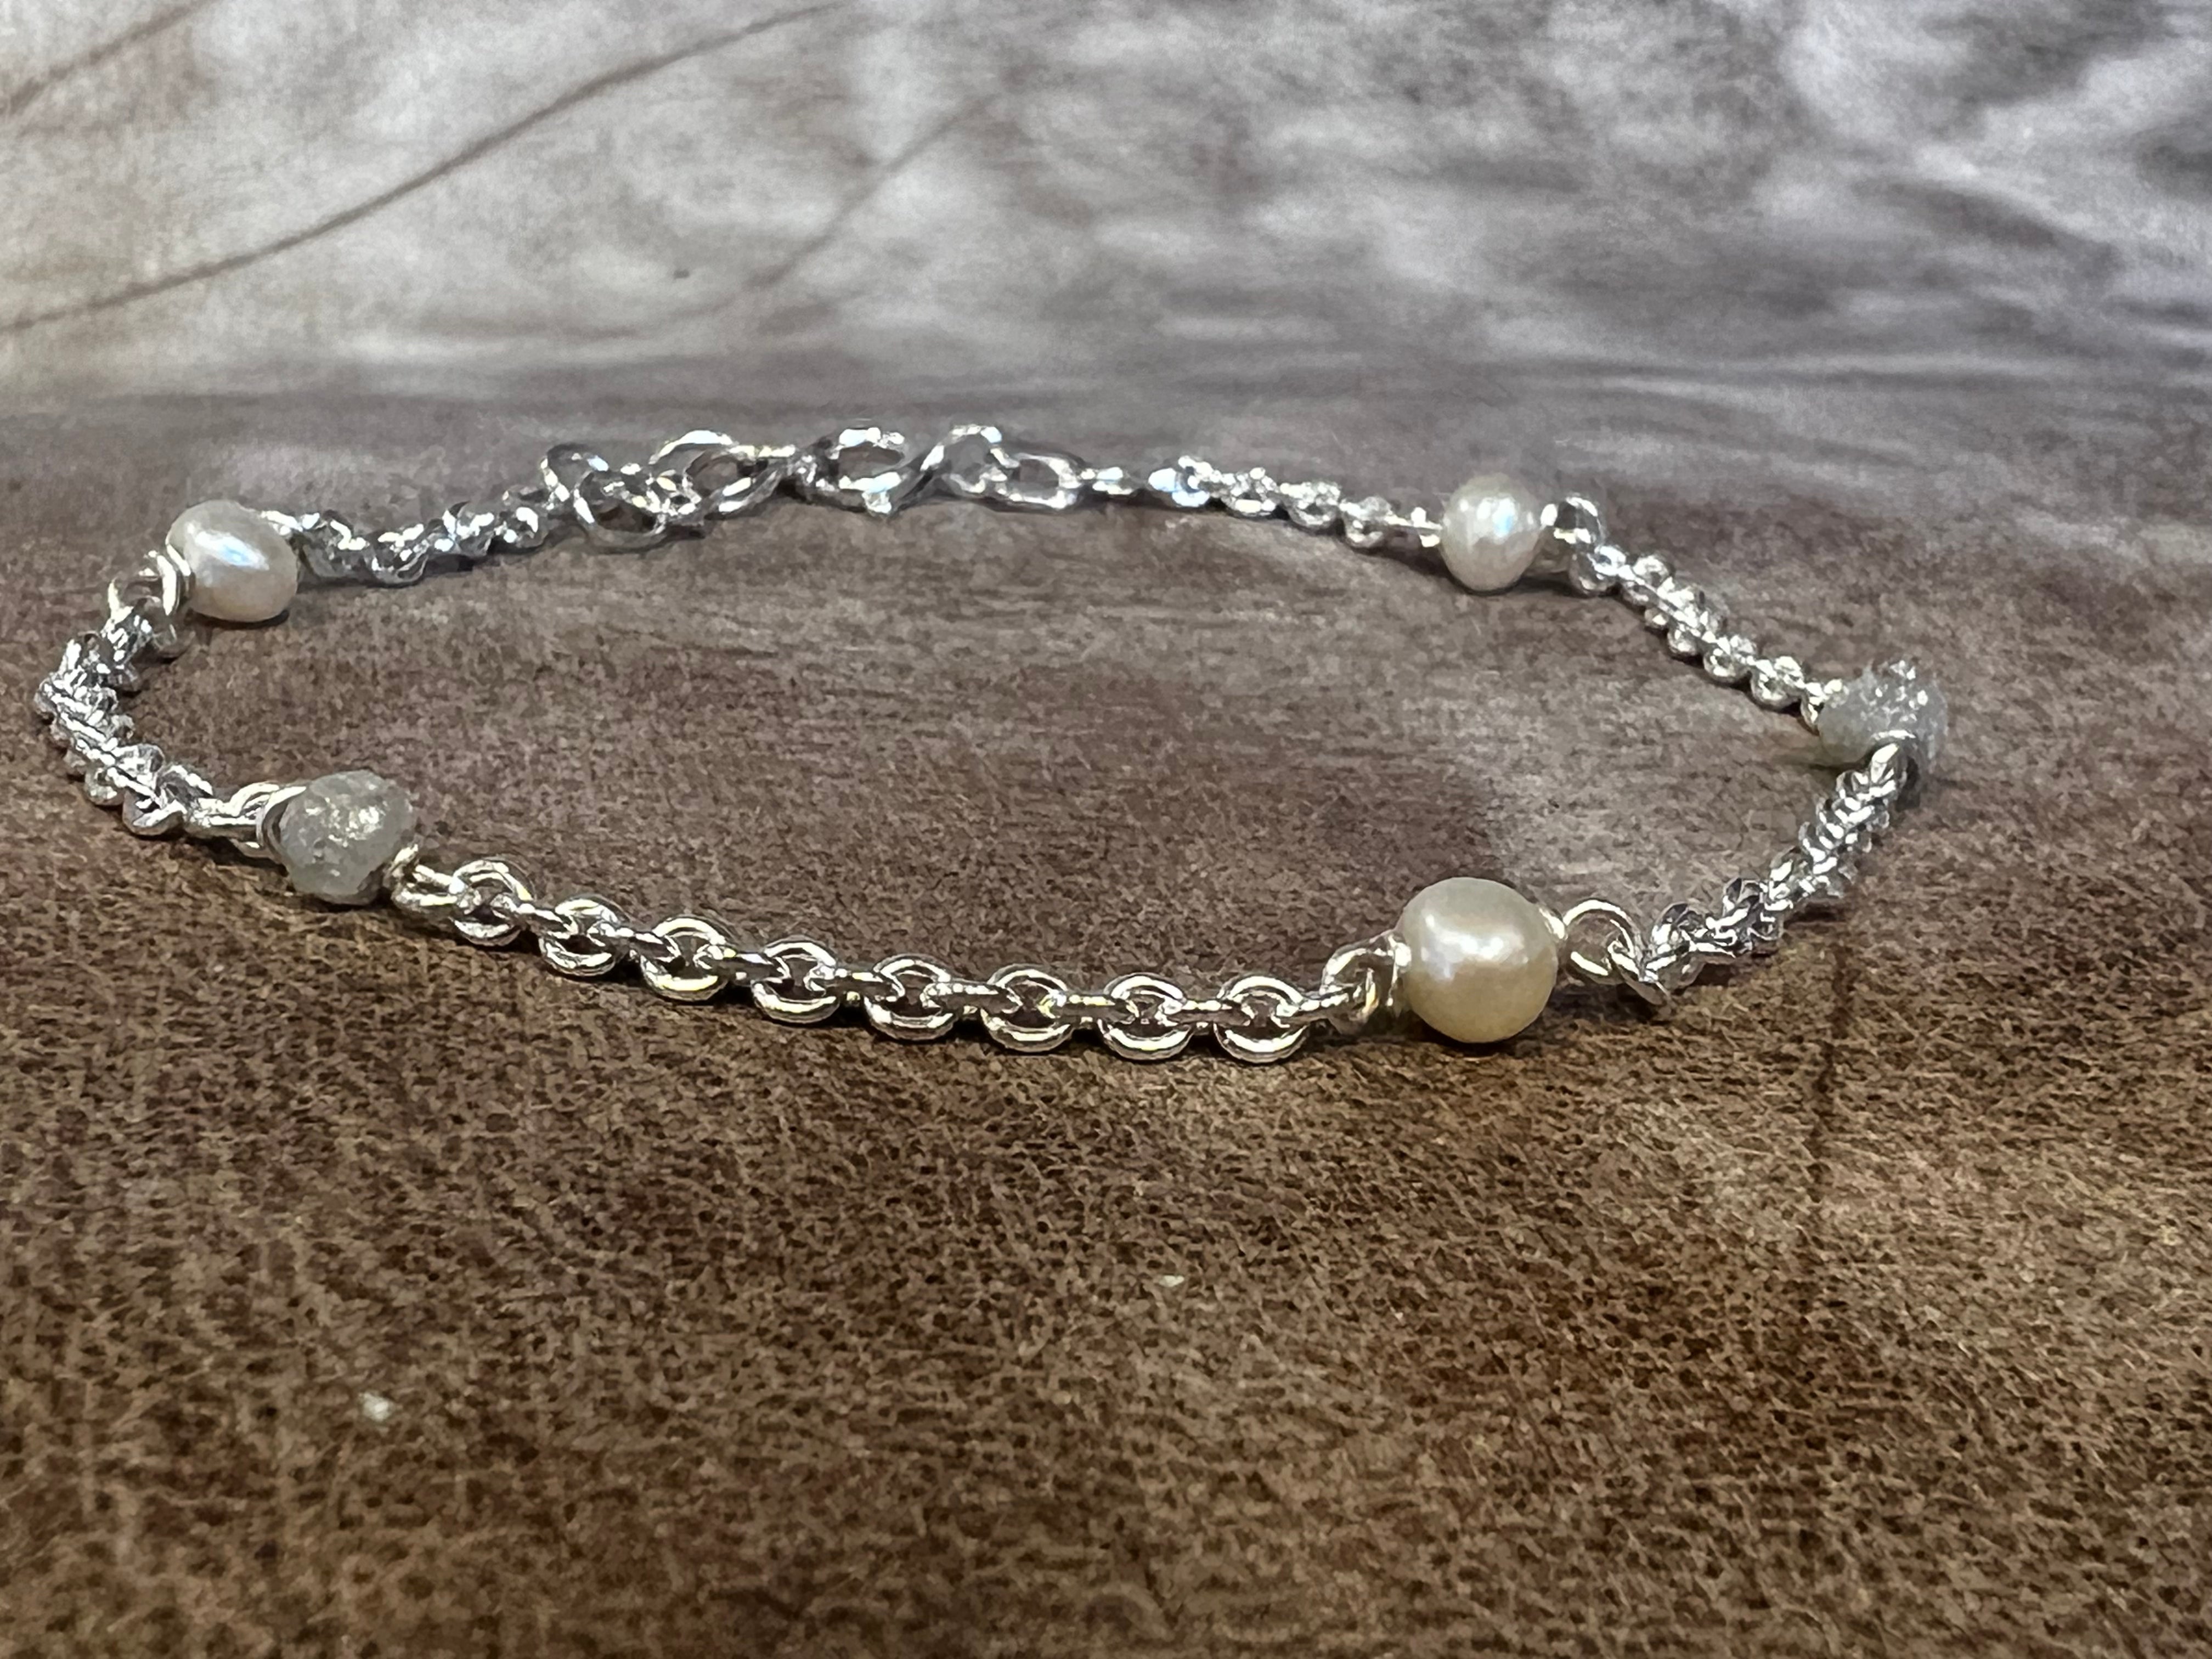 Pinocchio armbånd i sølv med hvide ferskvands perler og rå-diamanter